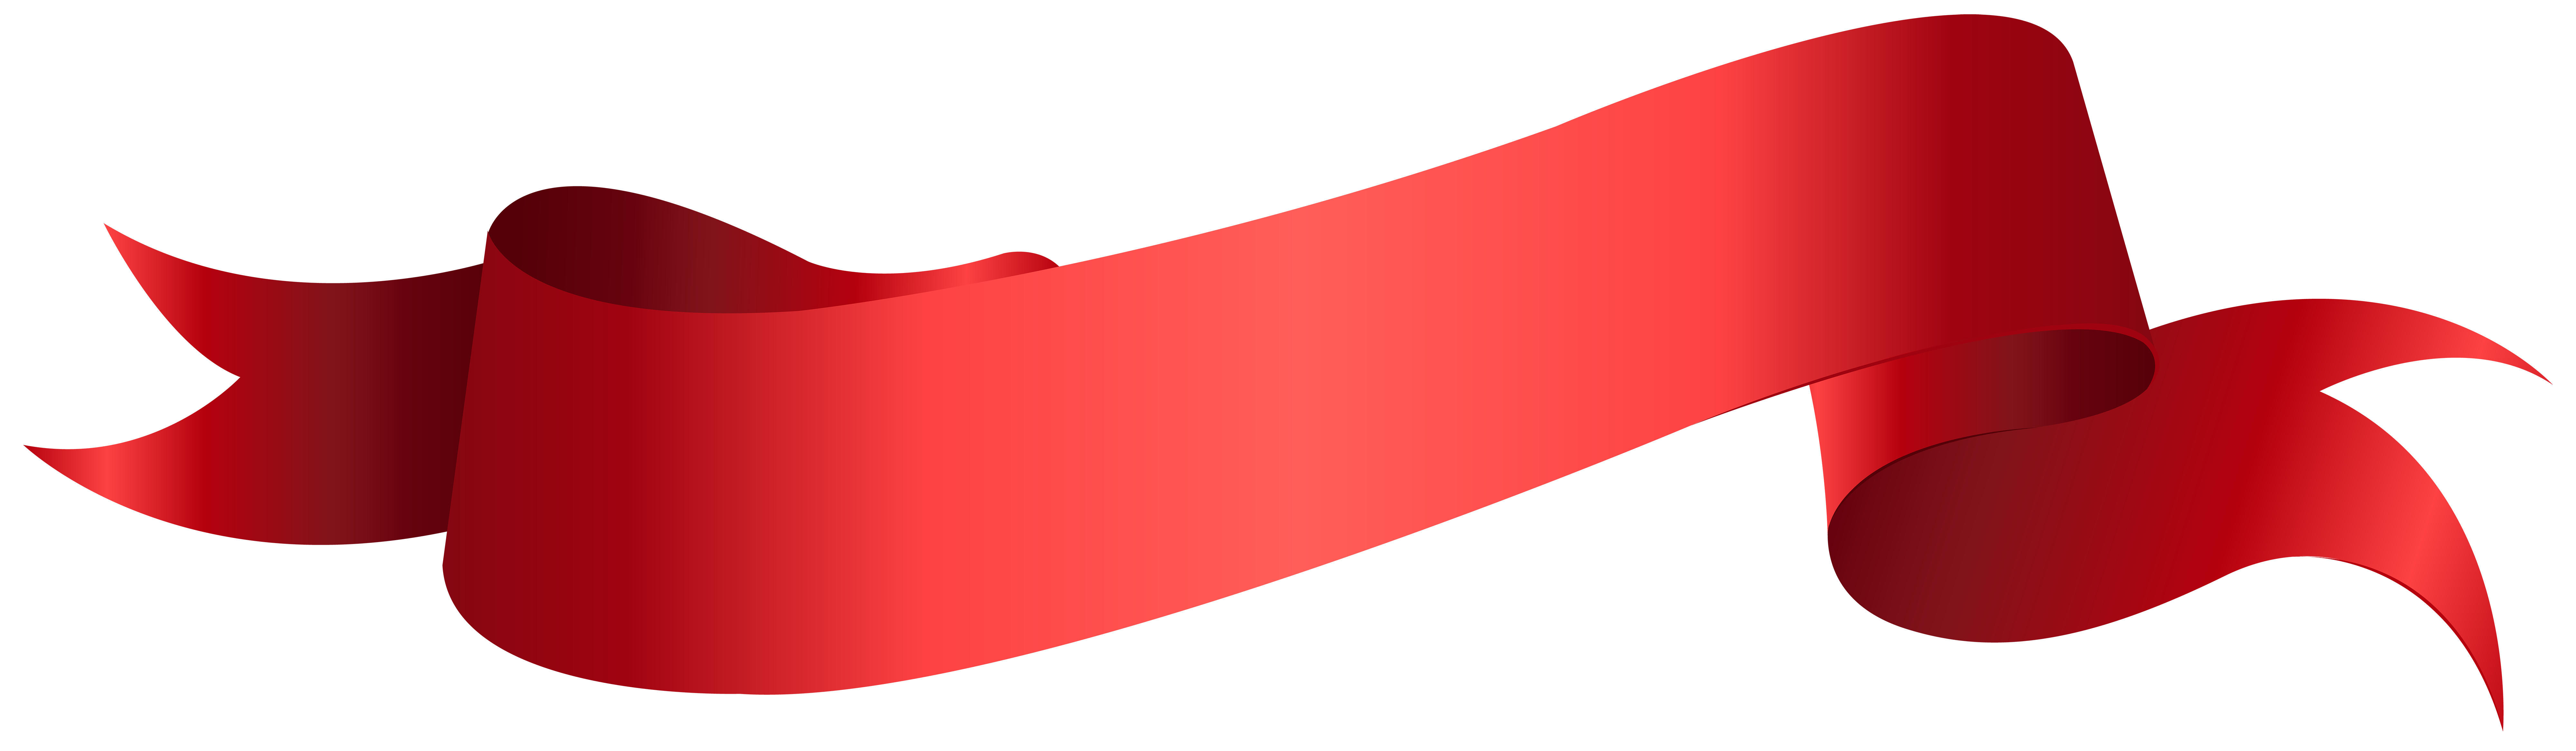 Banner Red PNG Clip Art Transparent Image